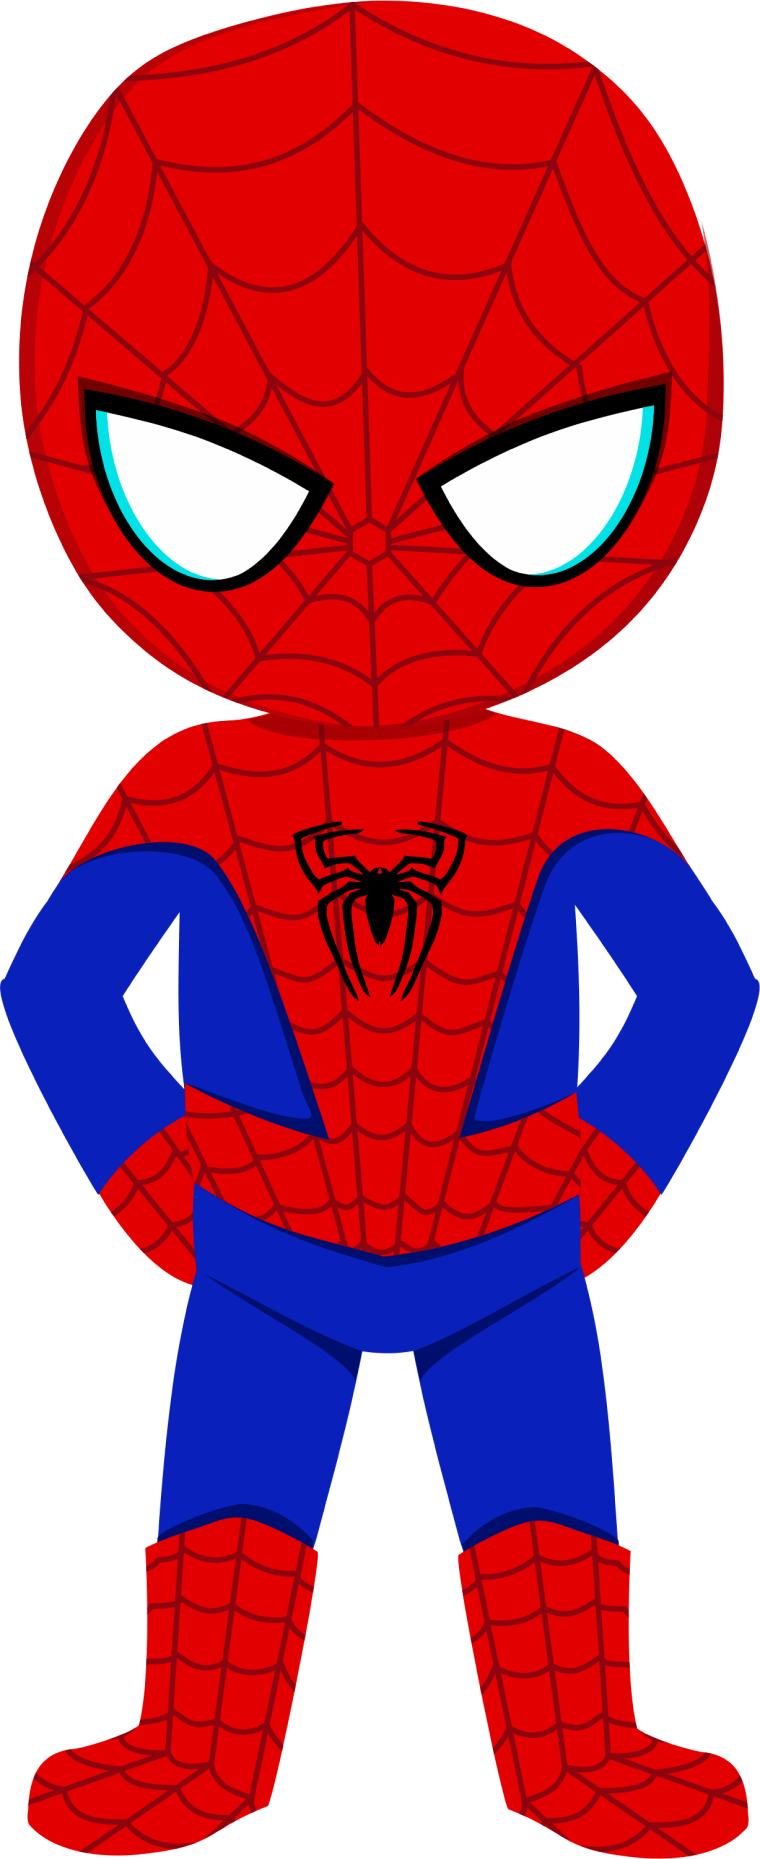 Marvel Spider-Man cartoon background png image